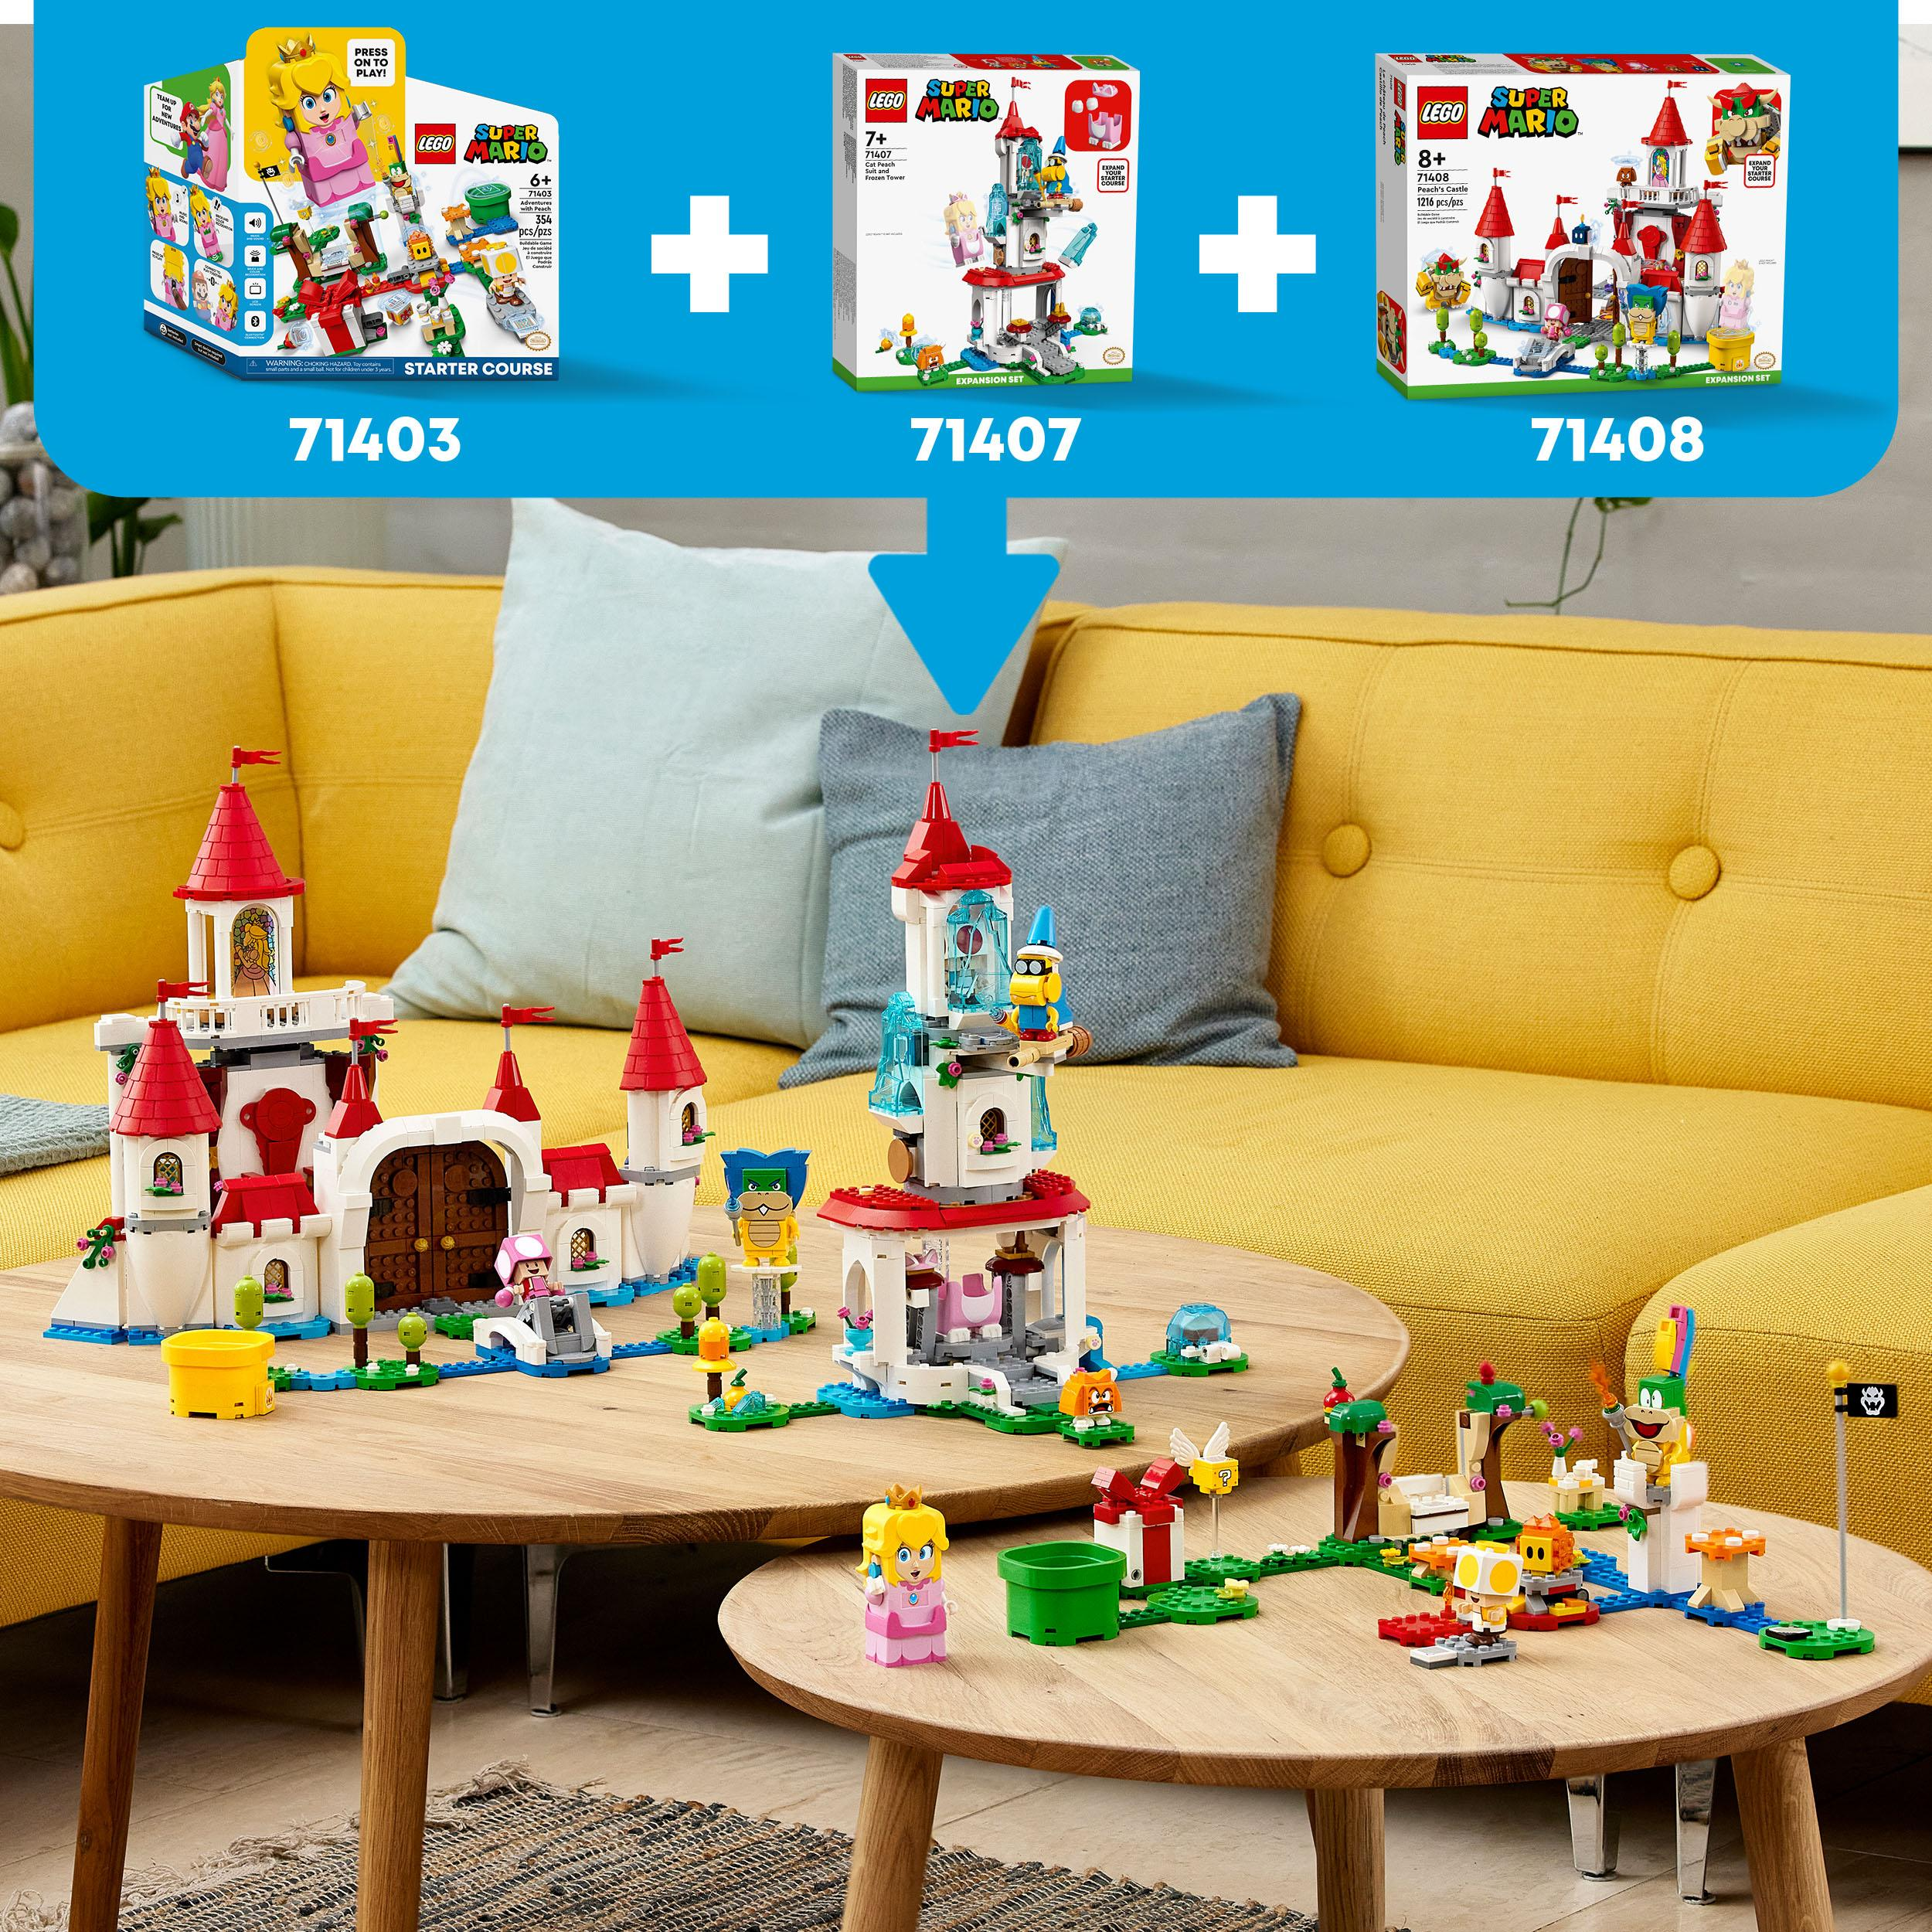 Erweiterungsset Mehrfarbig Super – und Mario 71407 Katzen-Peach-Anzug LEGO Eisturm Bausatz,